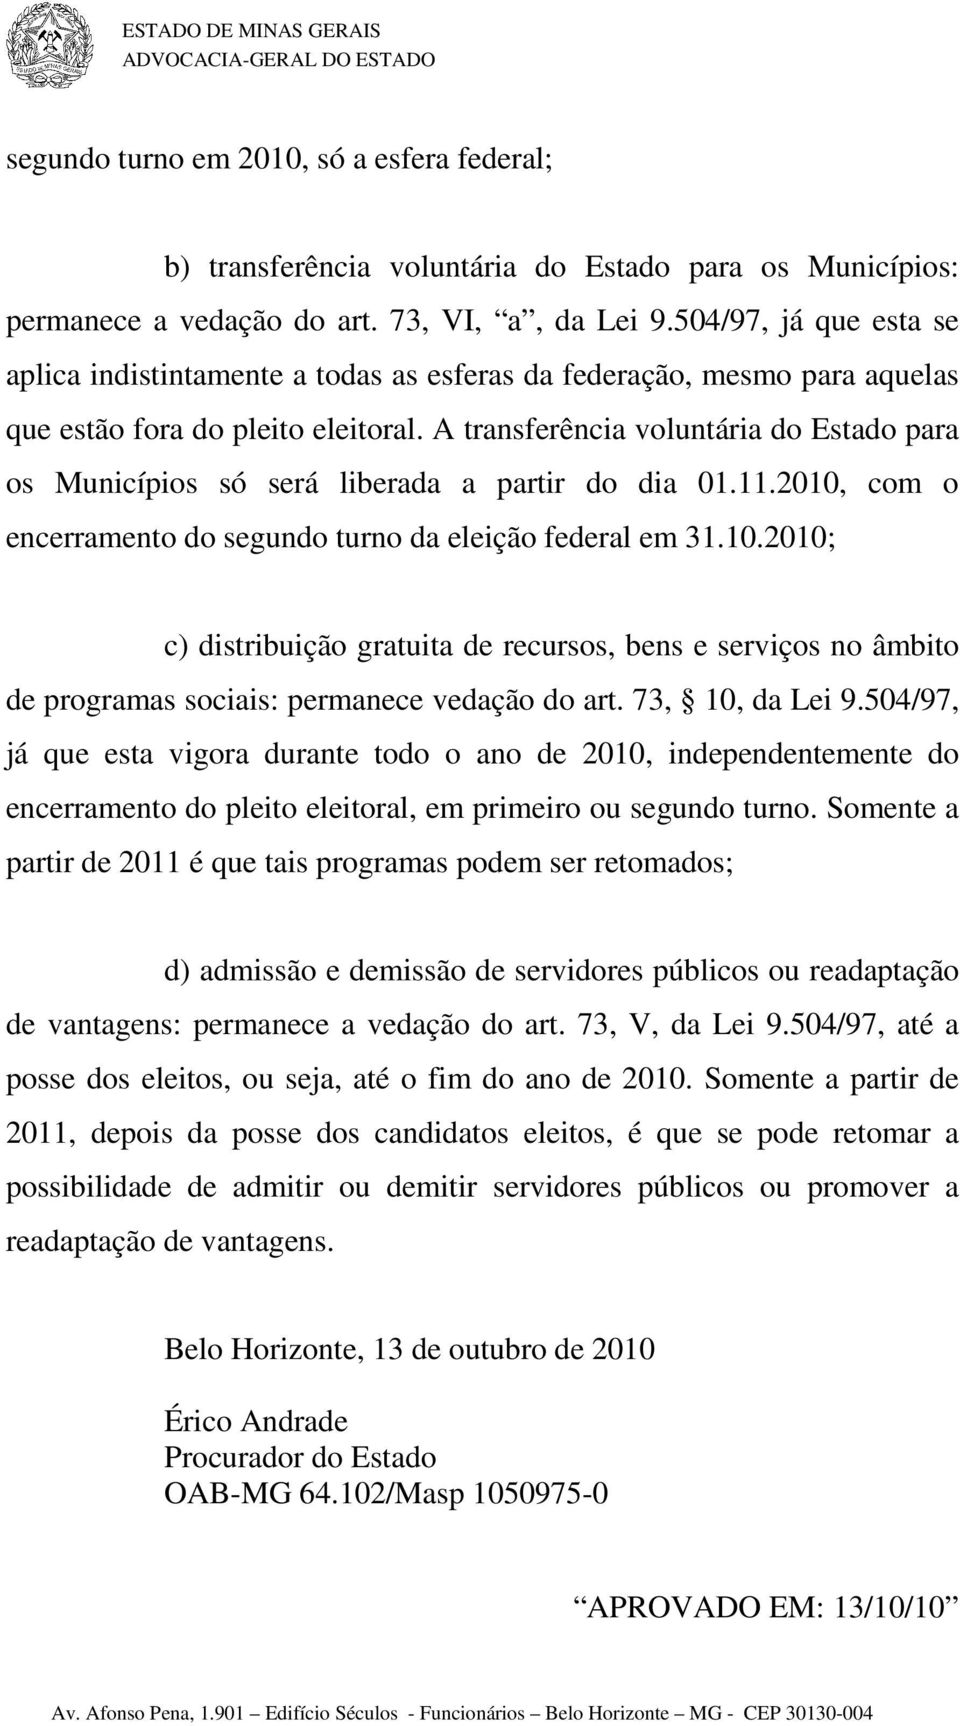 A transferência voluntária do Estado para os Municípios só será liberada a partir do dia 01.11.2010,